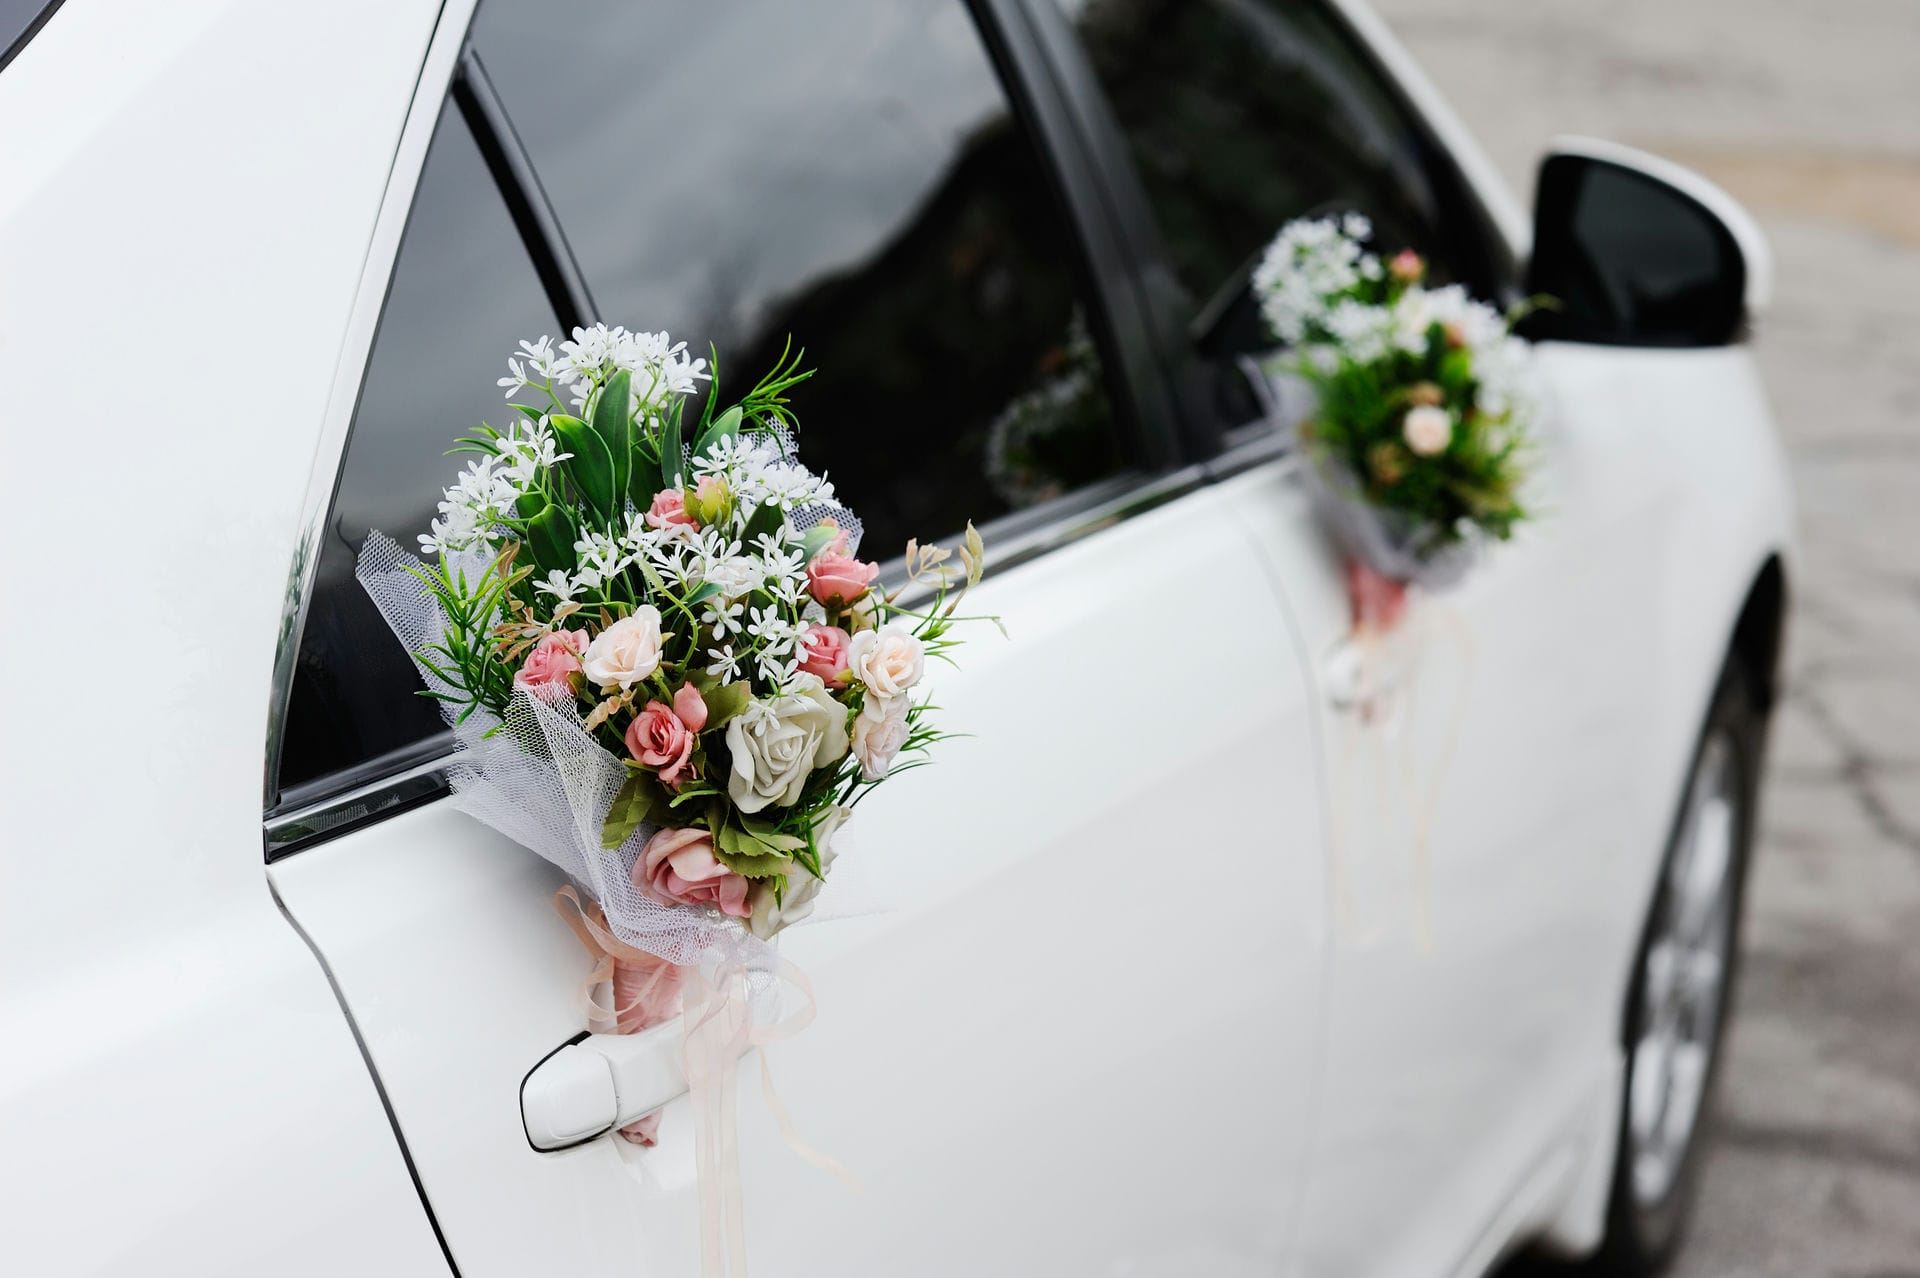 Beautiful decorations for a wedding car. Wedding organization